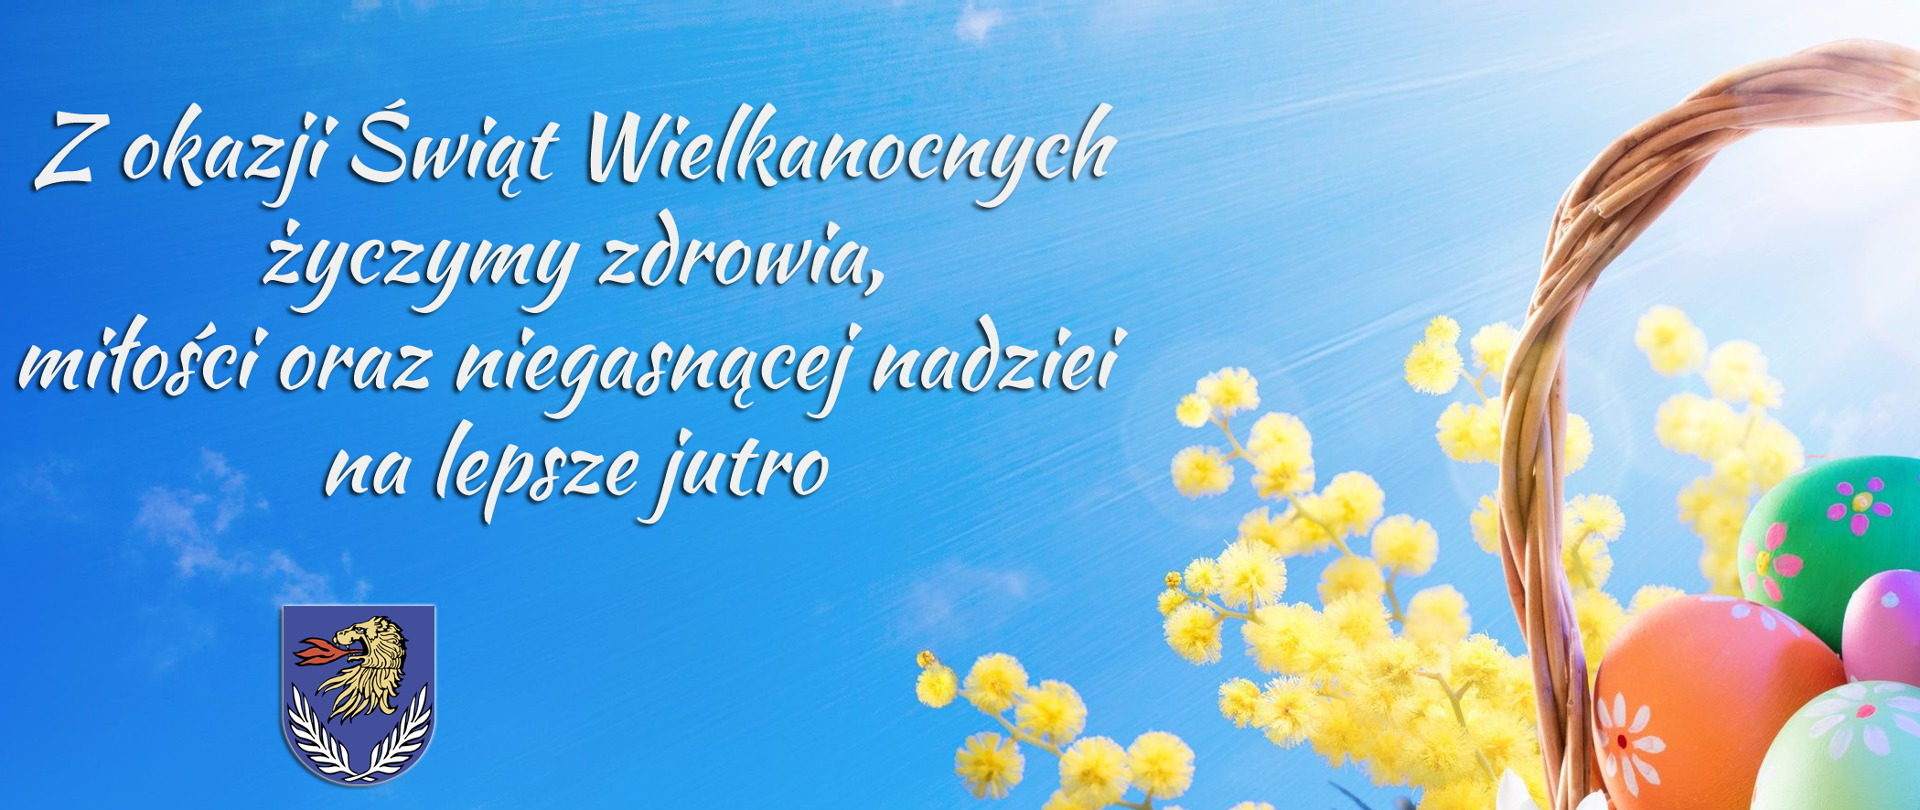 Ilustracja przedstawia koszyczek z wielkanocnymi pisankami, żółte i białe kwiaty leżące na zielonej trawie, na błękitnym tle treść życzeń: Z okazji Świąt Wielkanocnych życzymy zdrowia, miłości oraz niegasnącej nadziei na lepsze jutro. Wójt Gminy Wierzbica Bożena Deniszczuk Przewodniczący rady Gminy Zdzisław Muszański